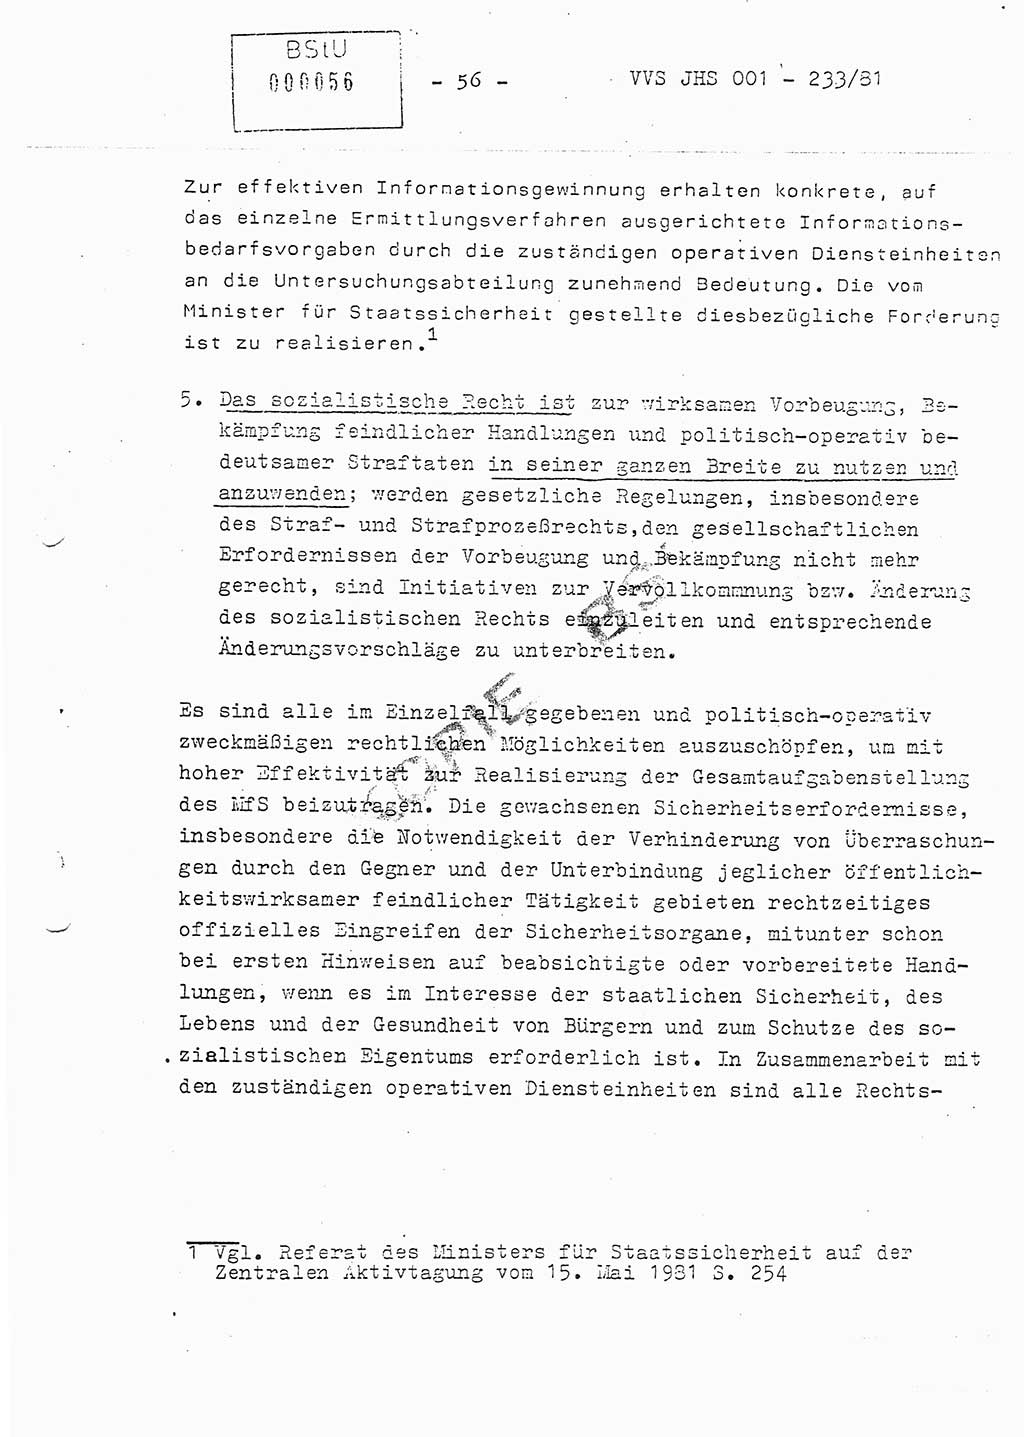 Dissertation Oberstleutnant Horst Zank (JHS), Oberstleutnant Dr. Karl-Heinz Knoblauch (JHS), Oberstleutnant Gustav-Adolf Kowalewski (HA Ⅸ), Oberstleutnant Wolfgang Plötner (HA Ⅸ), Ministerium für Staatssicherheit (MfS) [Deutsche Demokratische Republik (DDR)], Juristische Hochschule (JHS), Vertrauliche Verschlußsache (VVS) o001-233/81, Potsdam 1981, Blatt 56 (Diss. MfS DDR JHS VVS o001-233/81 1981, Bl. 56)